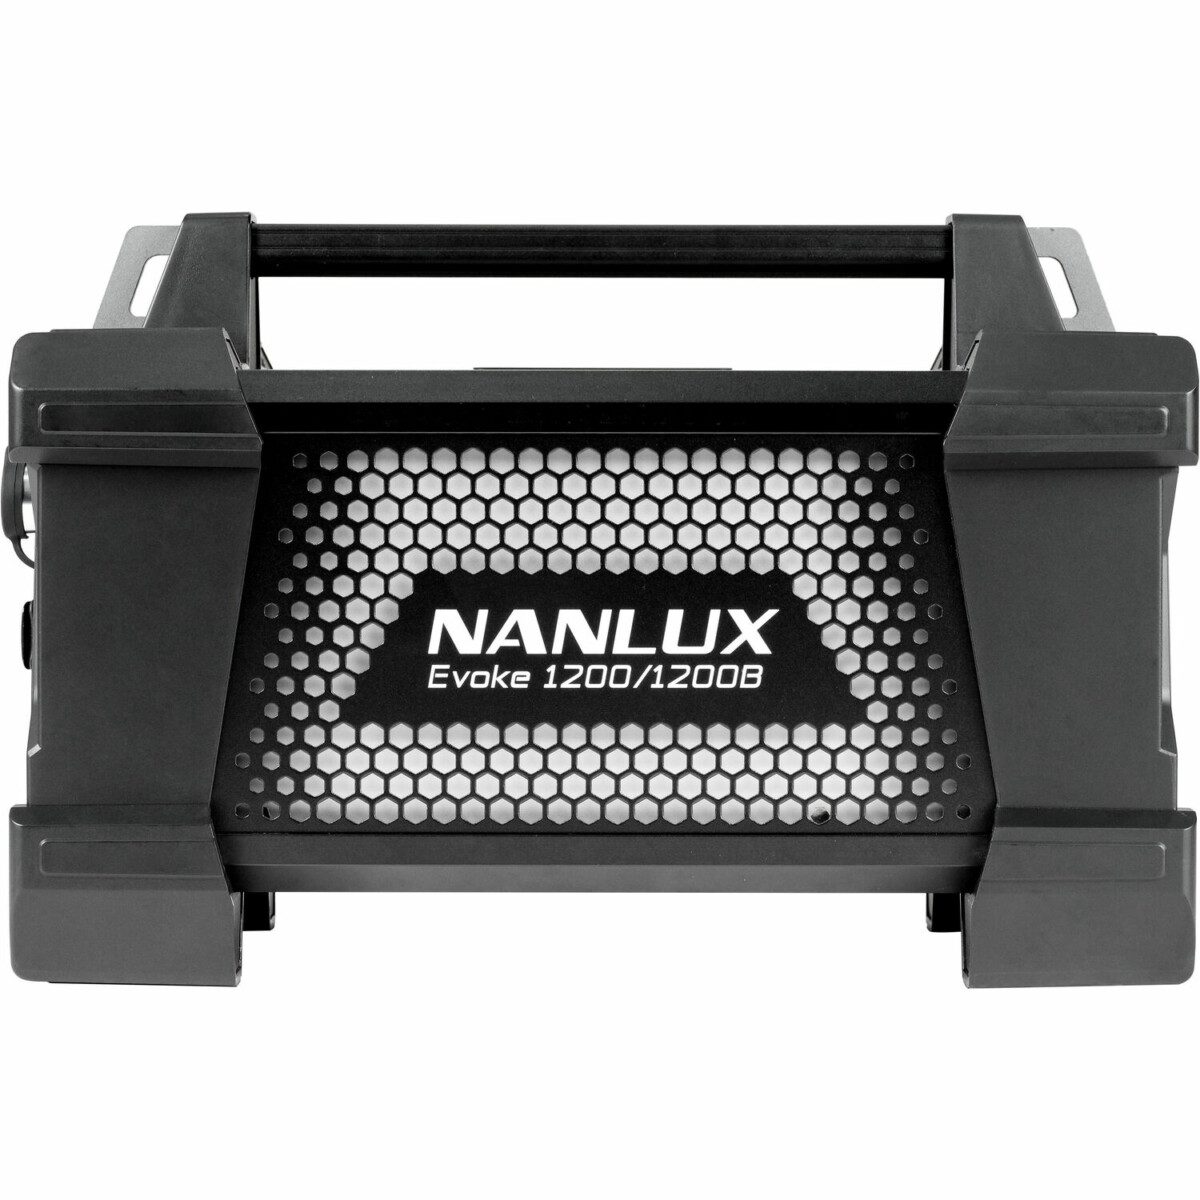 Nanlux Evoke 1200B